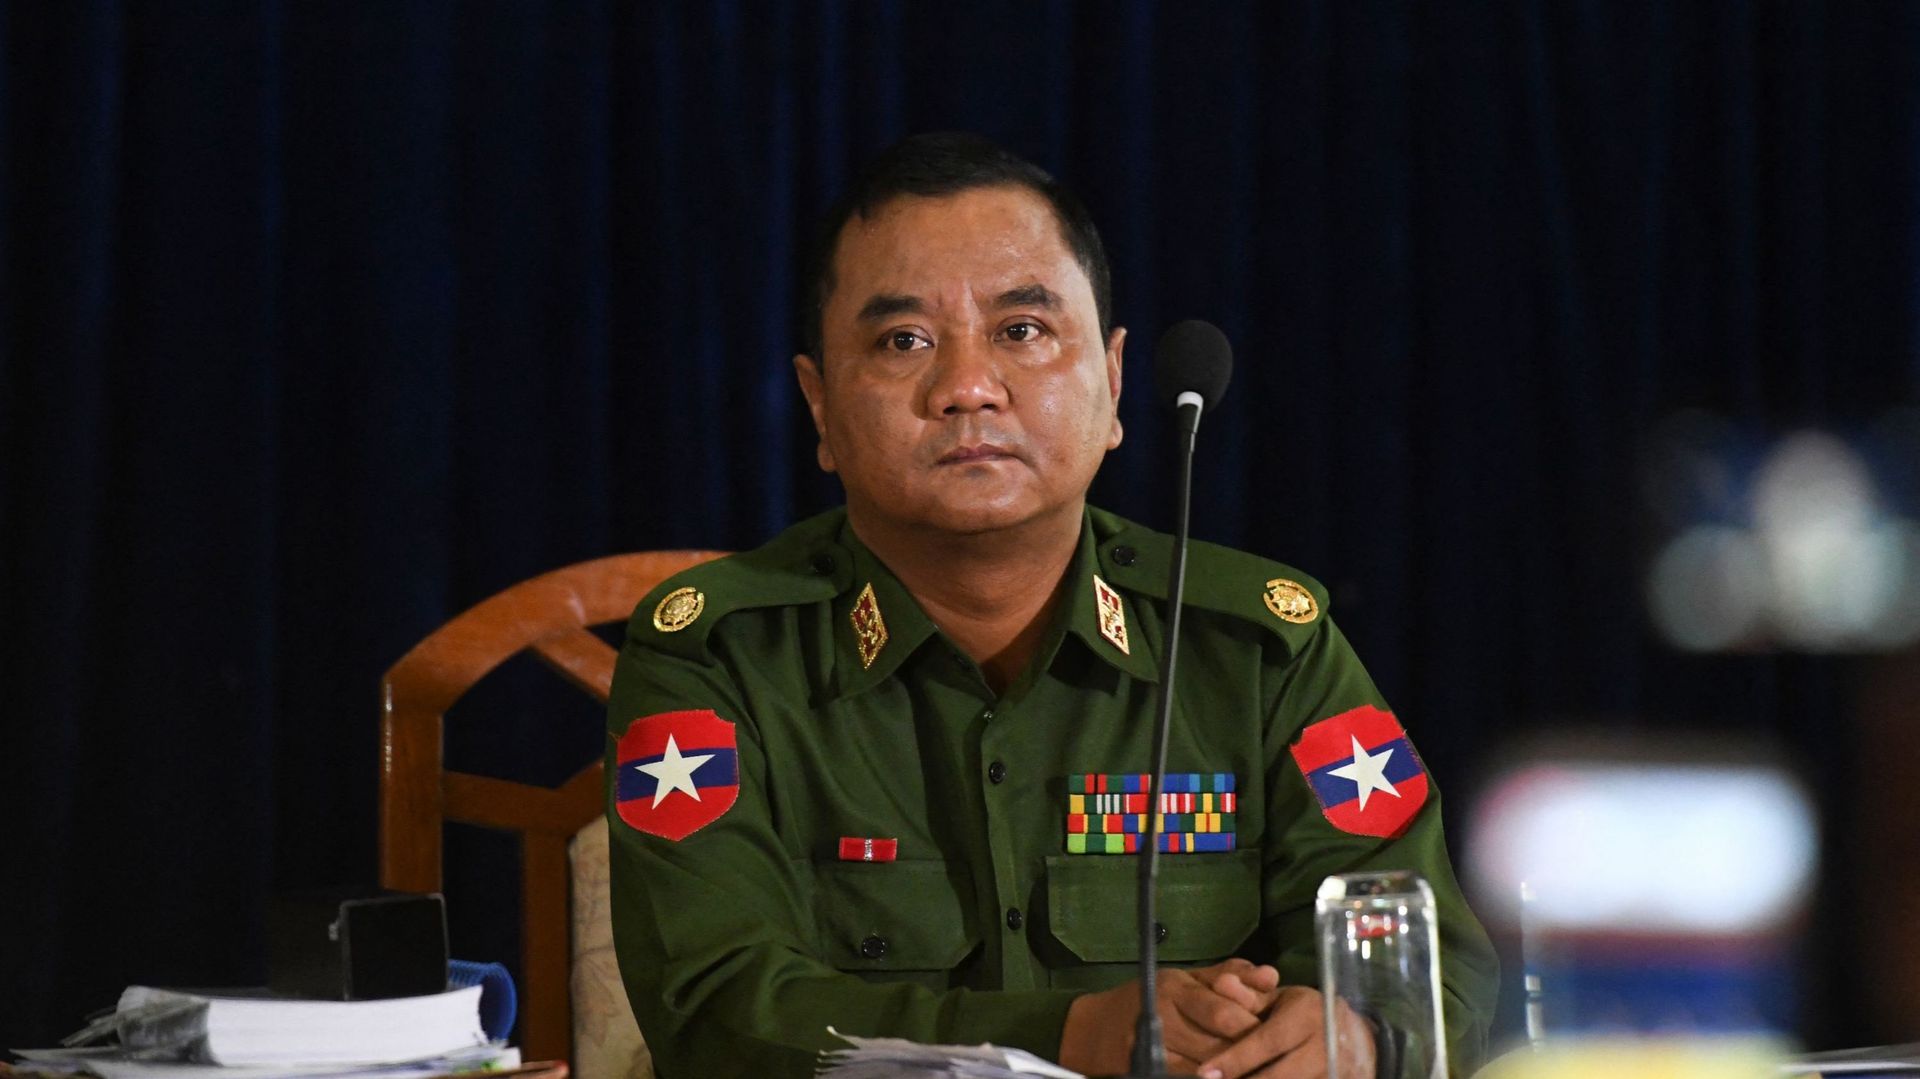 Image d’illustration : le général de brigade Zaw Min Tun du comité d’information militaire du Myanmar assiste à une conférence de presse au quartier général militaire de la division de Yangon, à Yangon, le 23 février 2019.